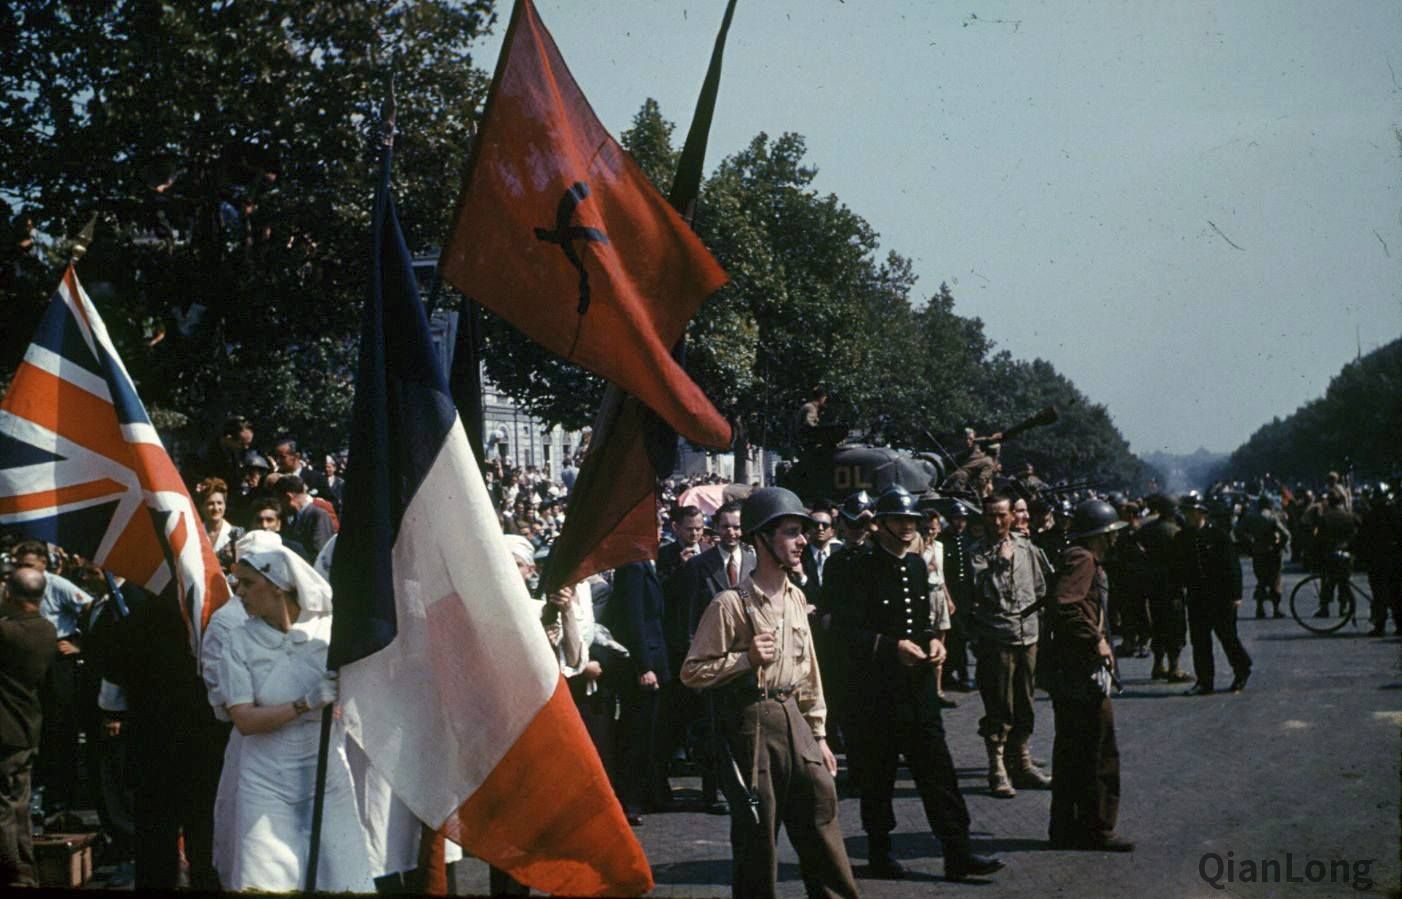 在寻找盟军解放巴黎的照片时，我发现了这张能看到法国共产党旗帜的照片